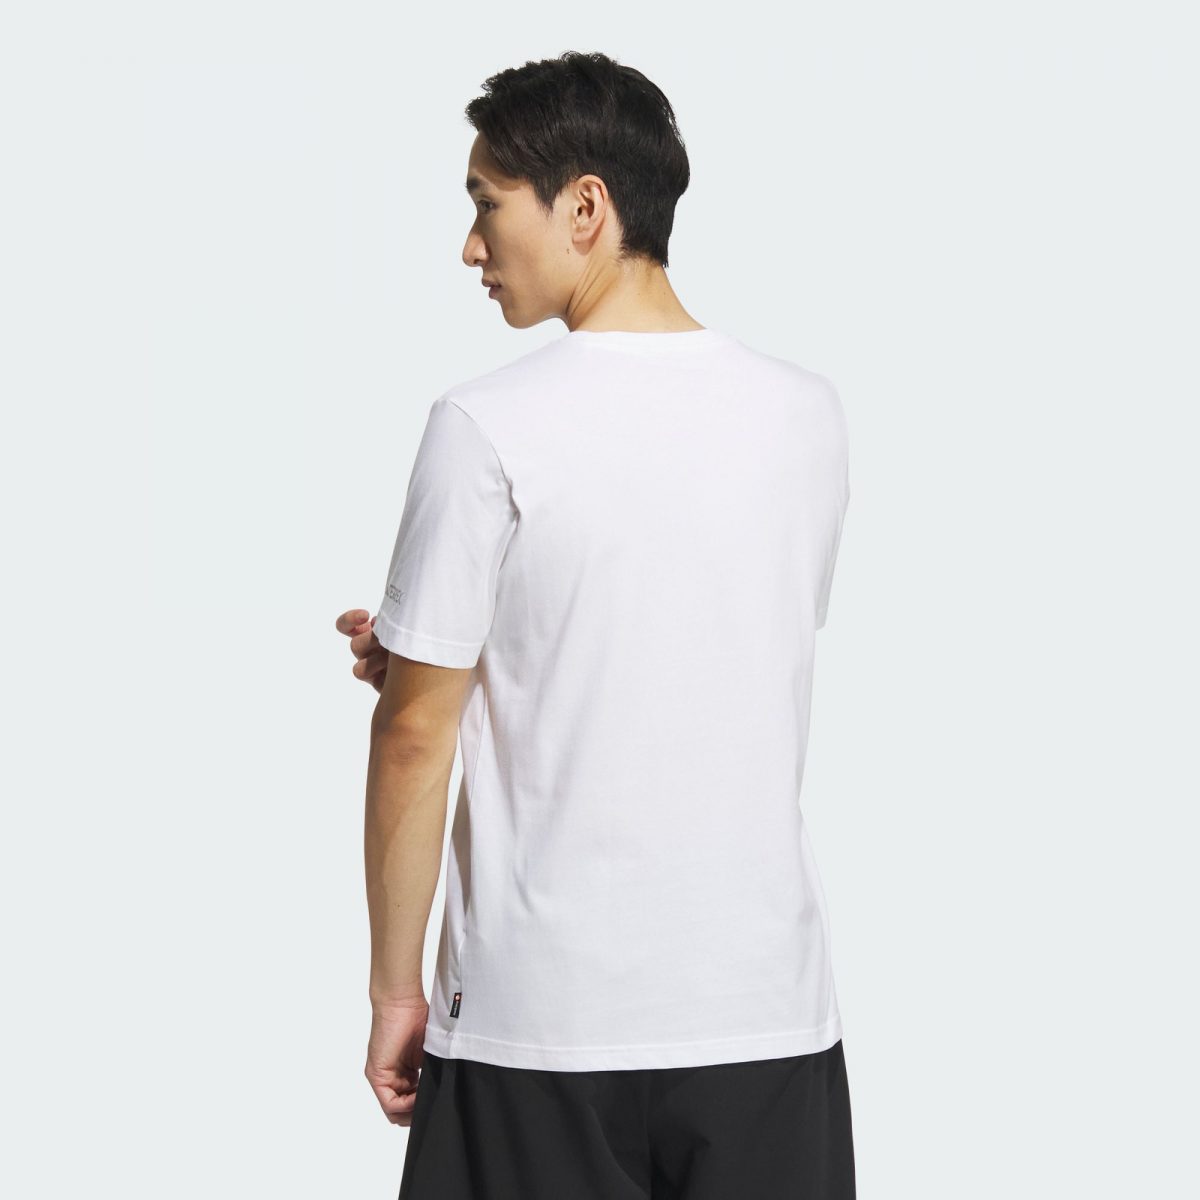 Мужская футболка adidas GRAPHIC POLYGIENE T-SHIRT 180 GSM белая фотография